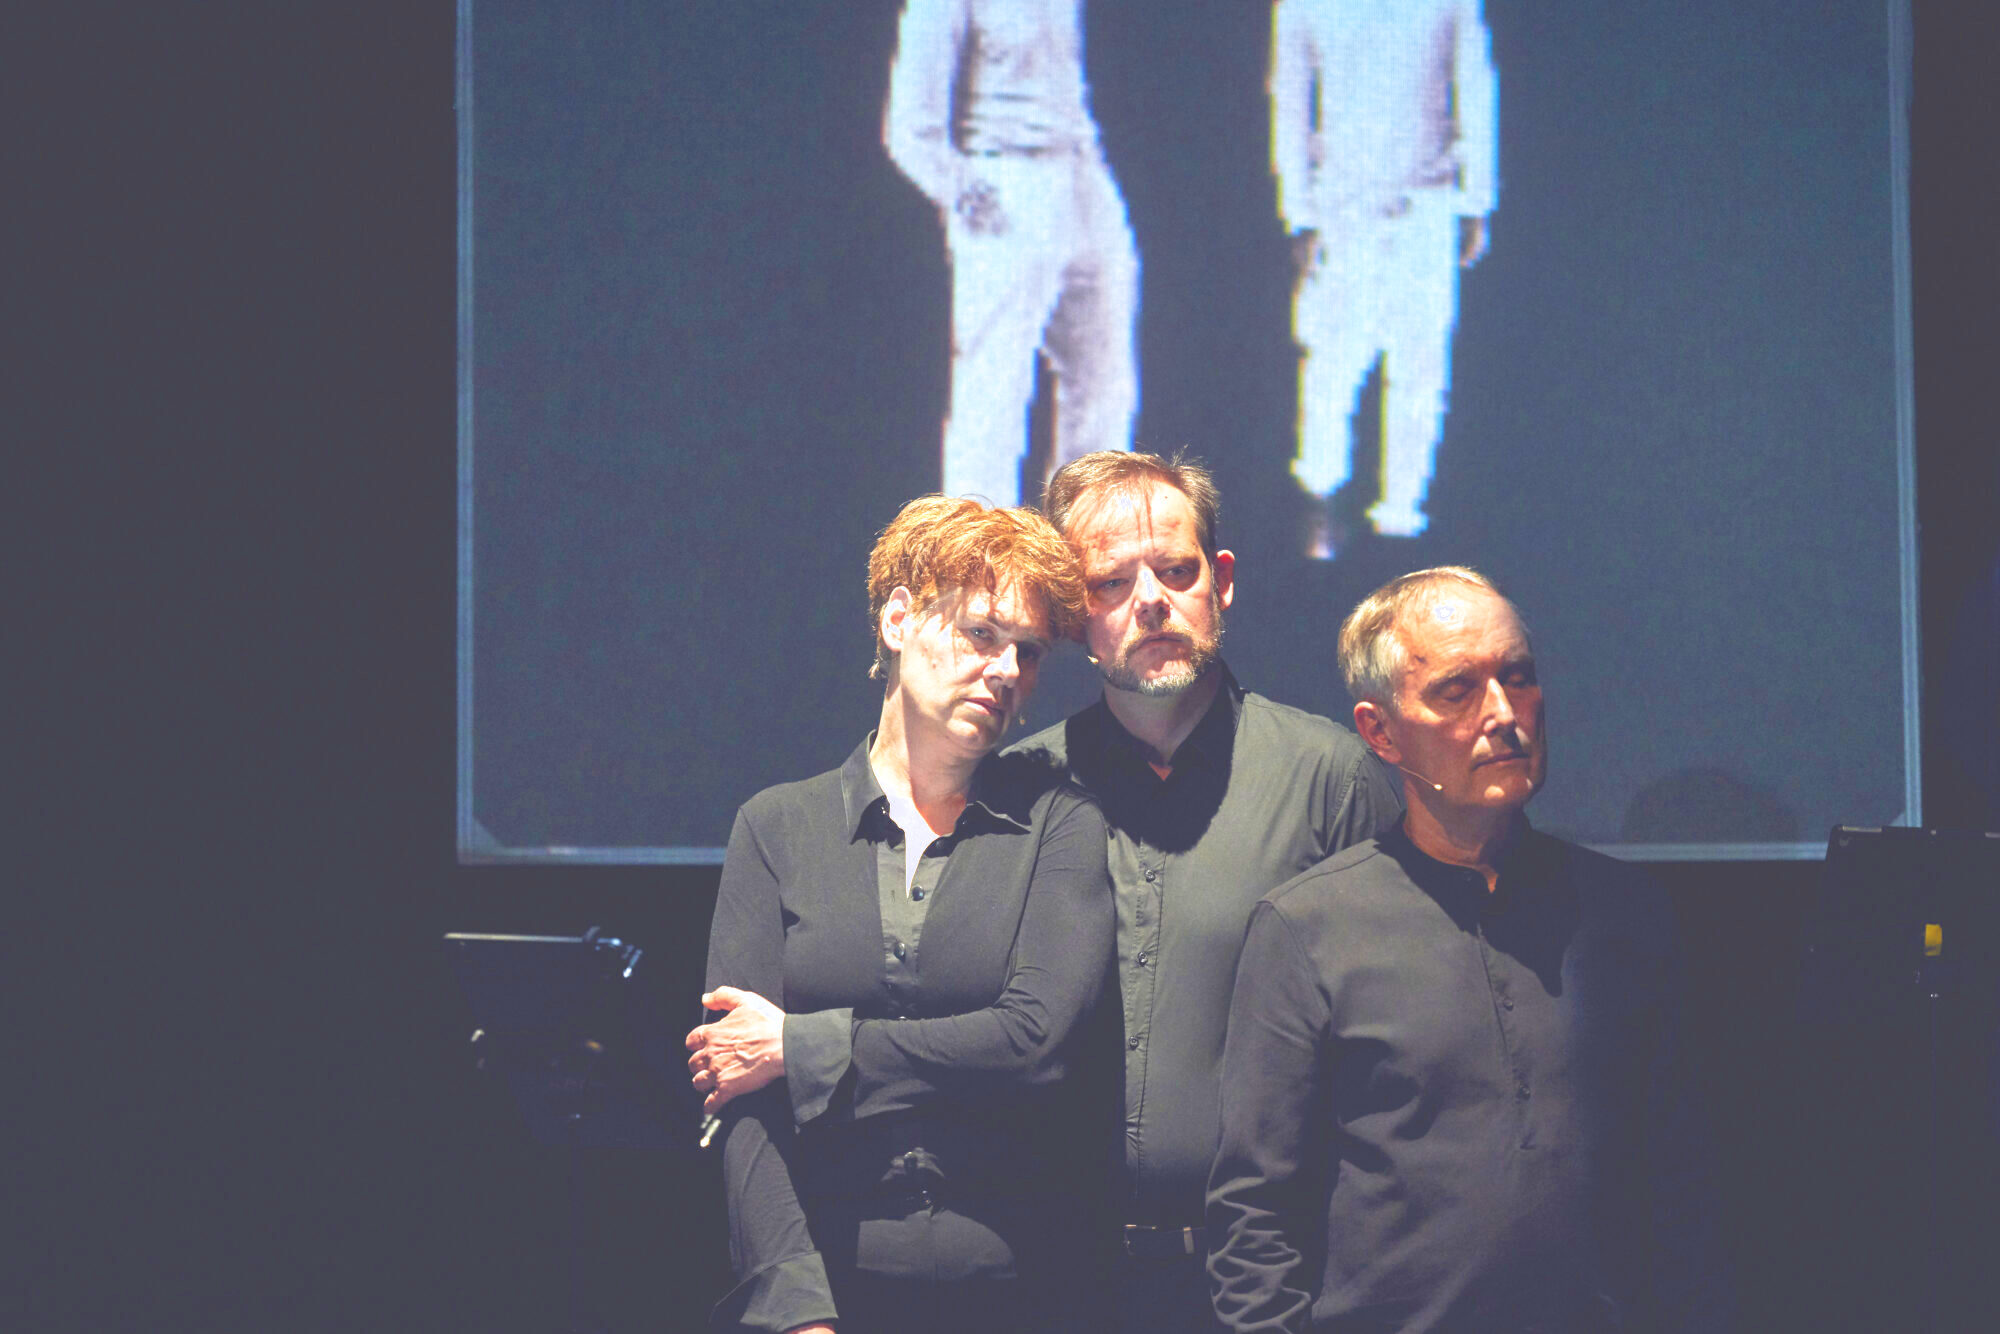 In der Mitte stehen drei Sänger*innen gegeneinander gelehnt. Im Hintergrund ist eine Projektion mit zwei weiß gekleideten Menschen zu sehen.